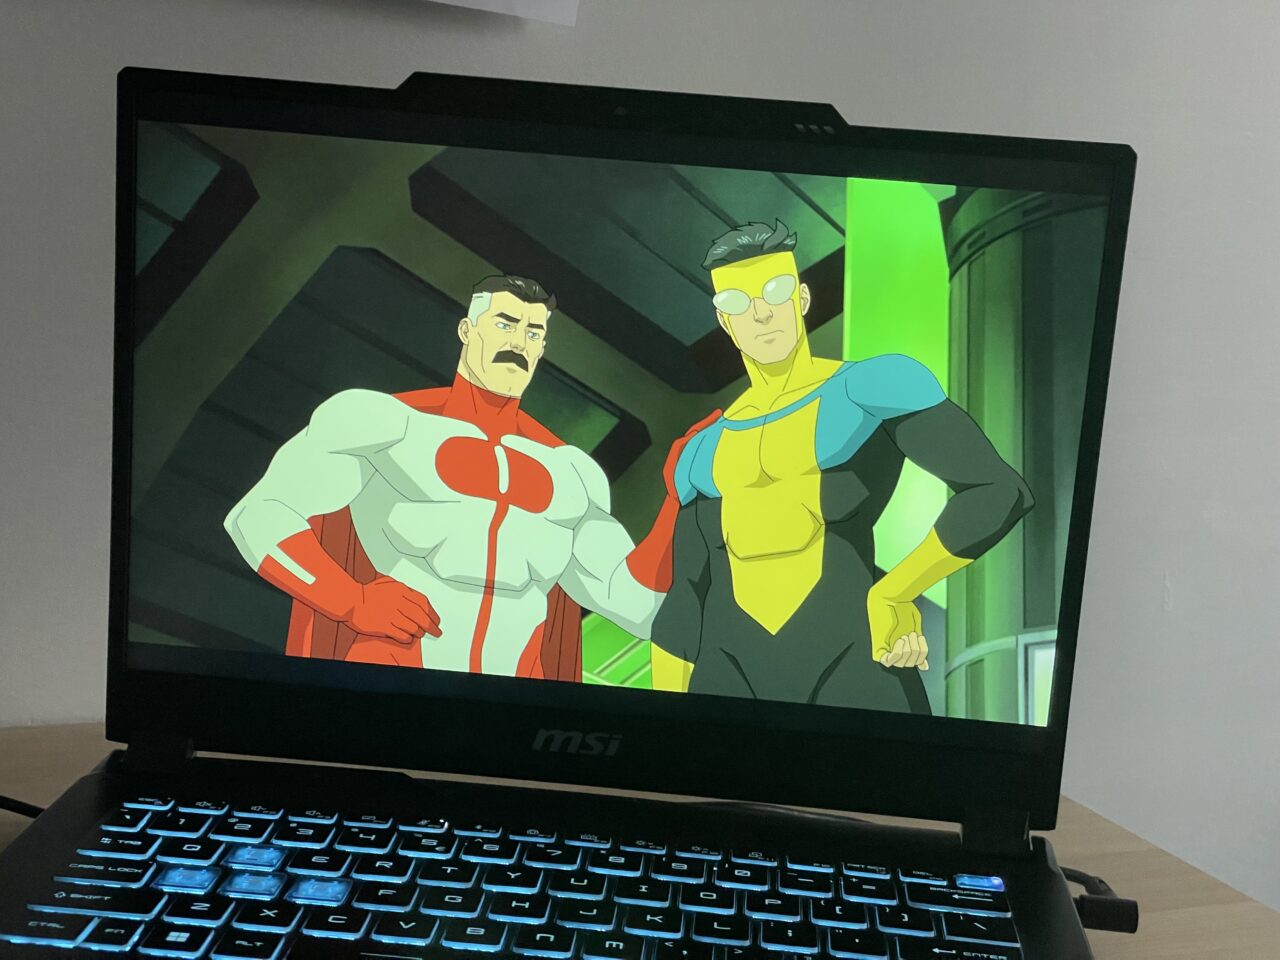 Laptop MSI wyświetlający kreskówkę z dwoma męskimi postaciami superbohaterów, jeden w czerwono-białym, drugi w żółto-niebieskim stroju, na tle zielonej poświaty.